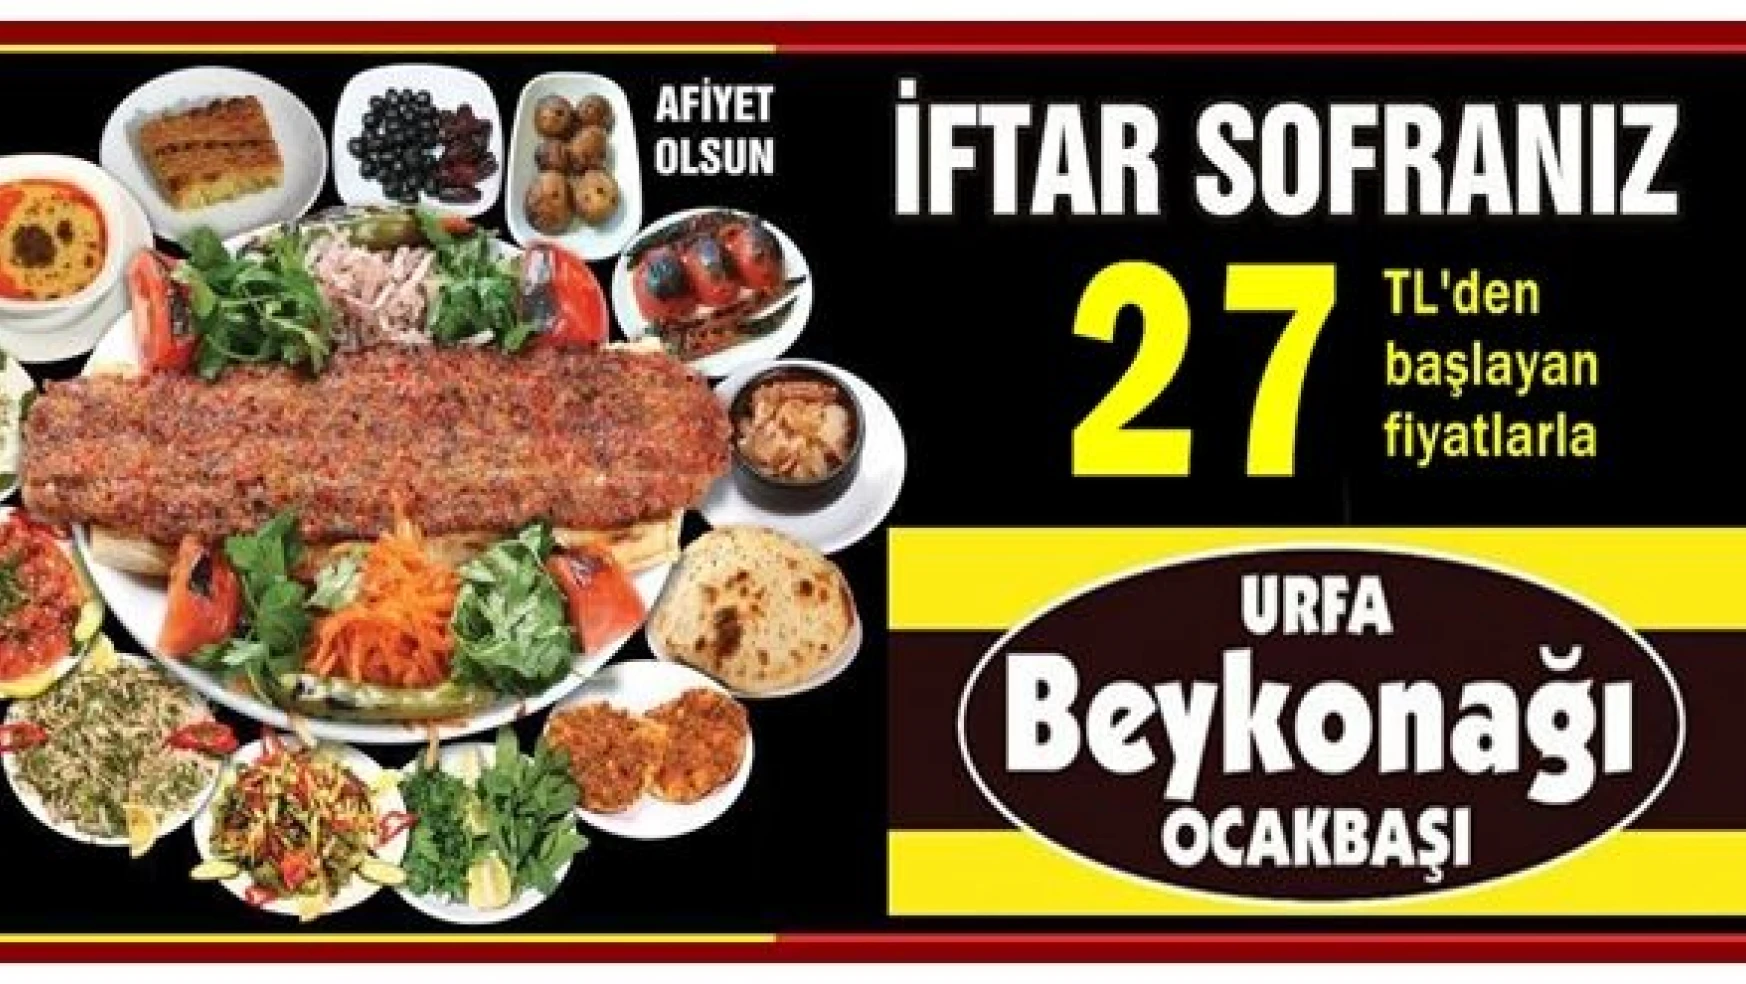 Urfa Bey Konağı'ndan eşsiz iftar menüleri